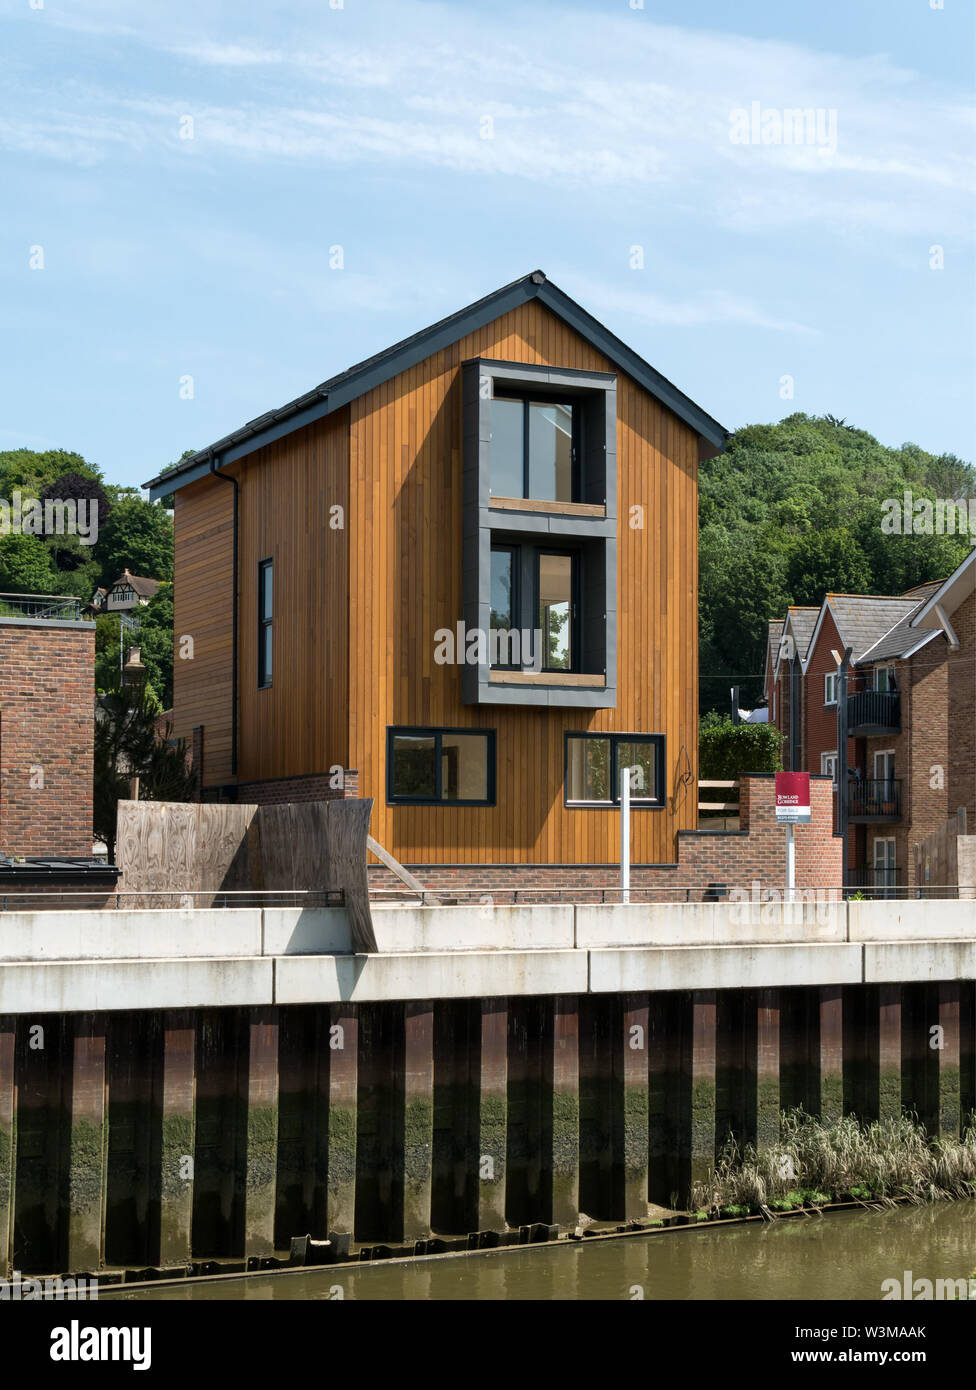 Nouveau luxe riverside house par la rivière Ouse, Timberyard lane, Lewes, East Sussex, England, UK Banque D'Images